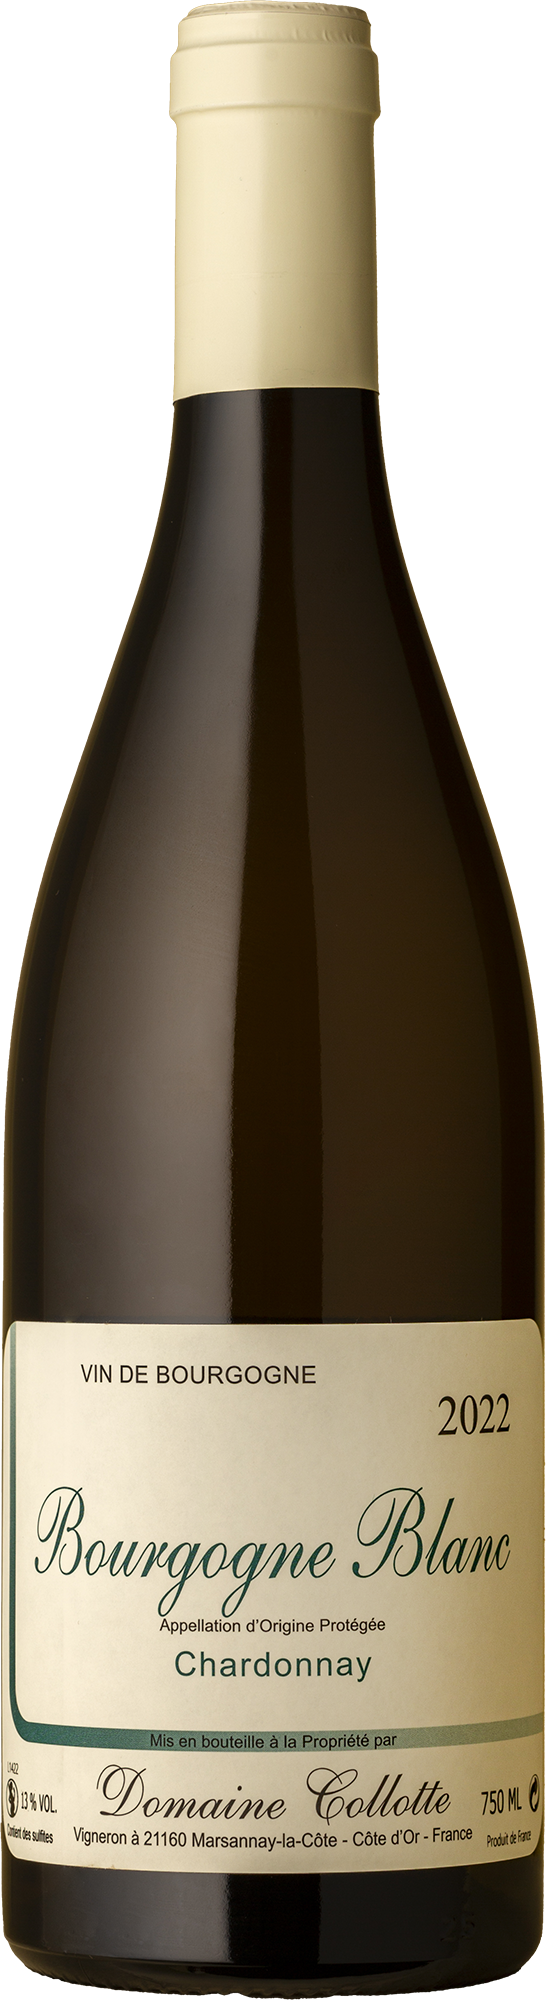 Domaine Collotte - Bourgogne Blanc 2022 White Wine